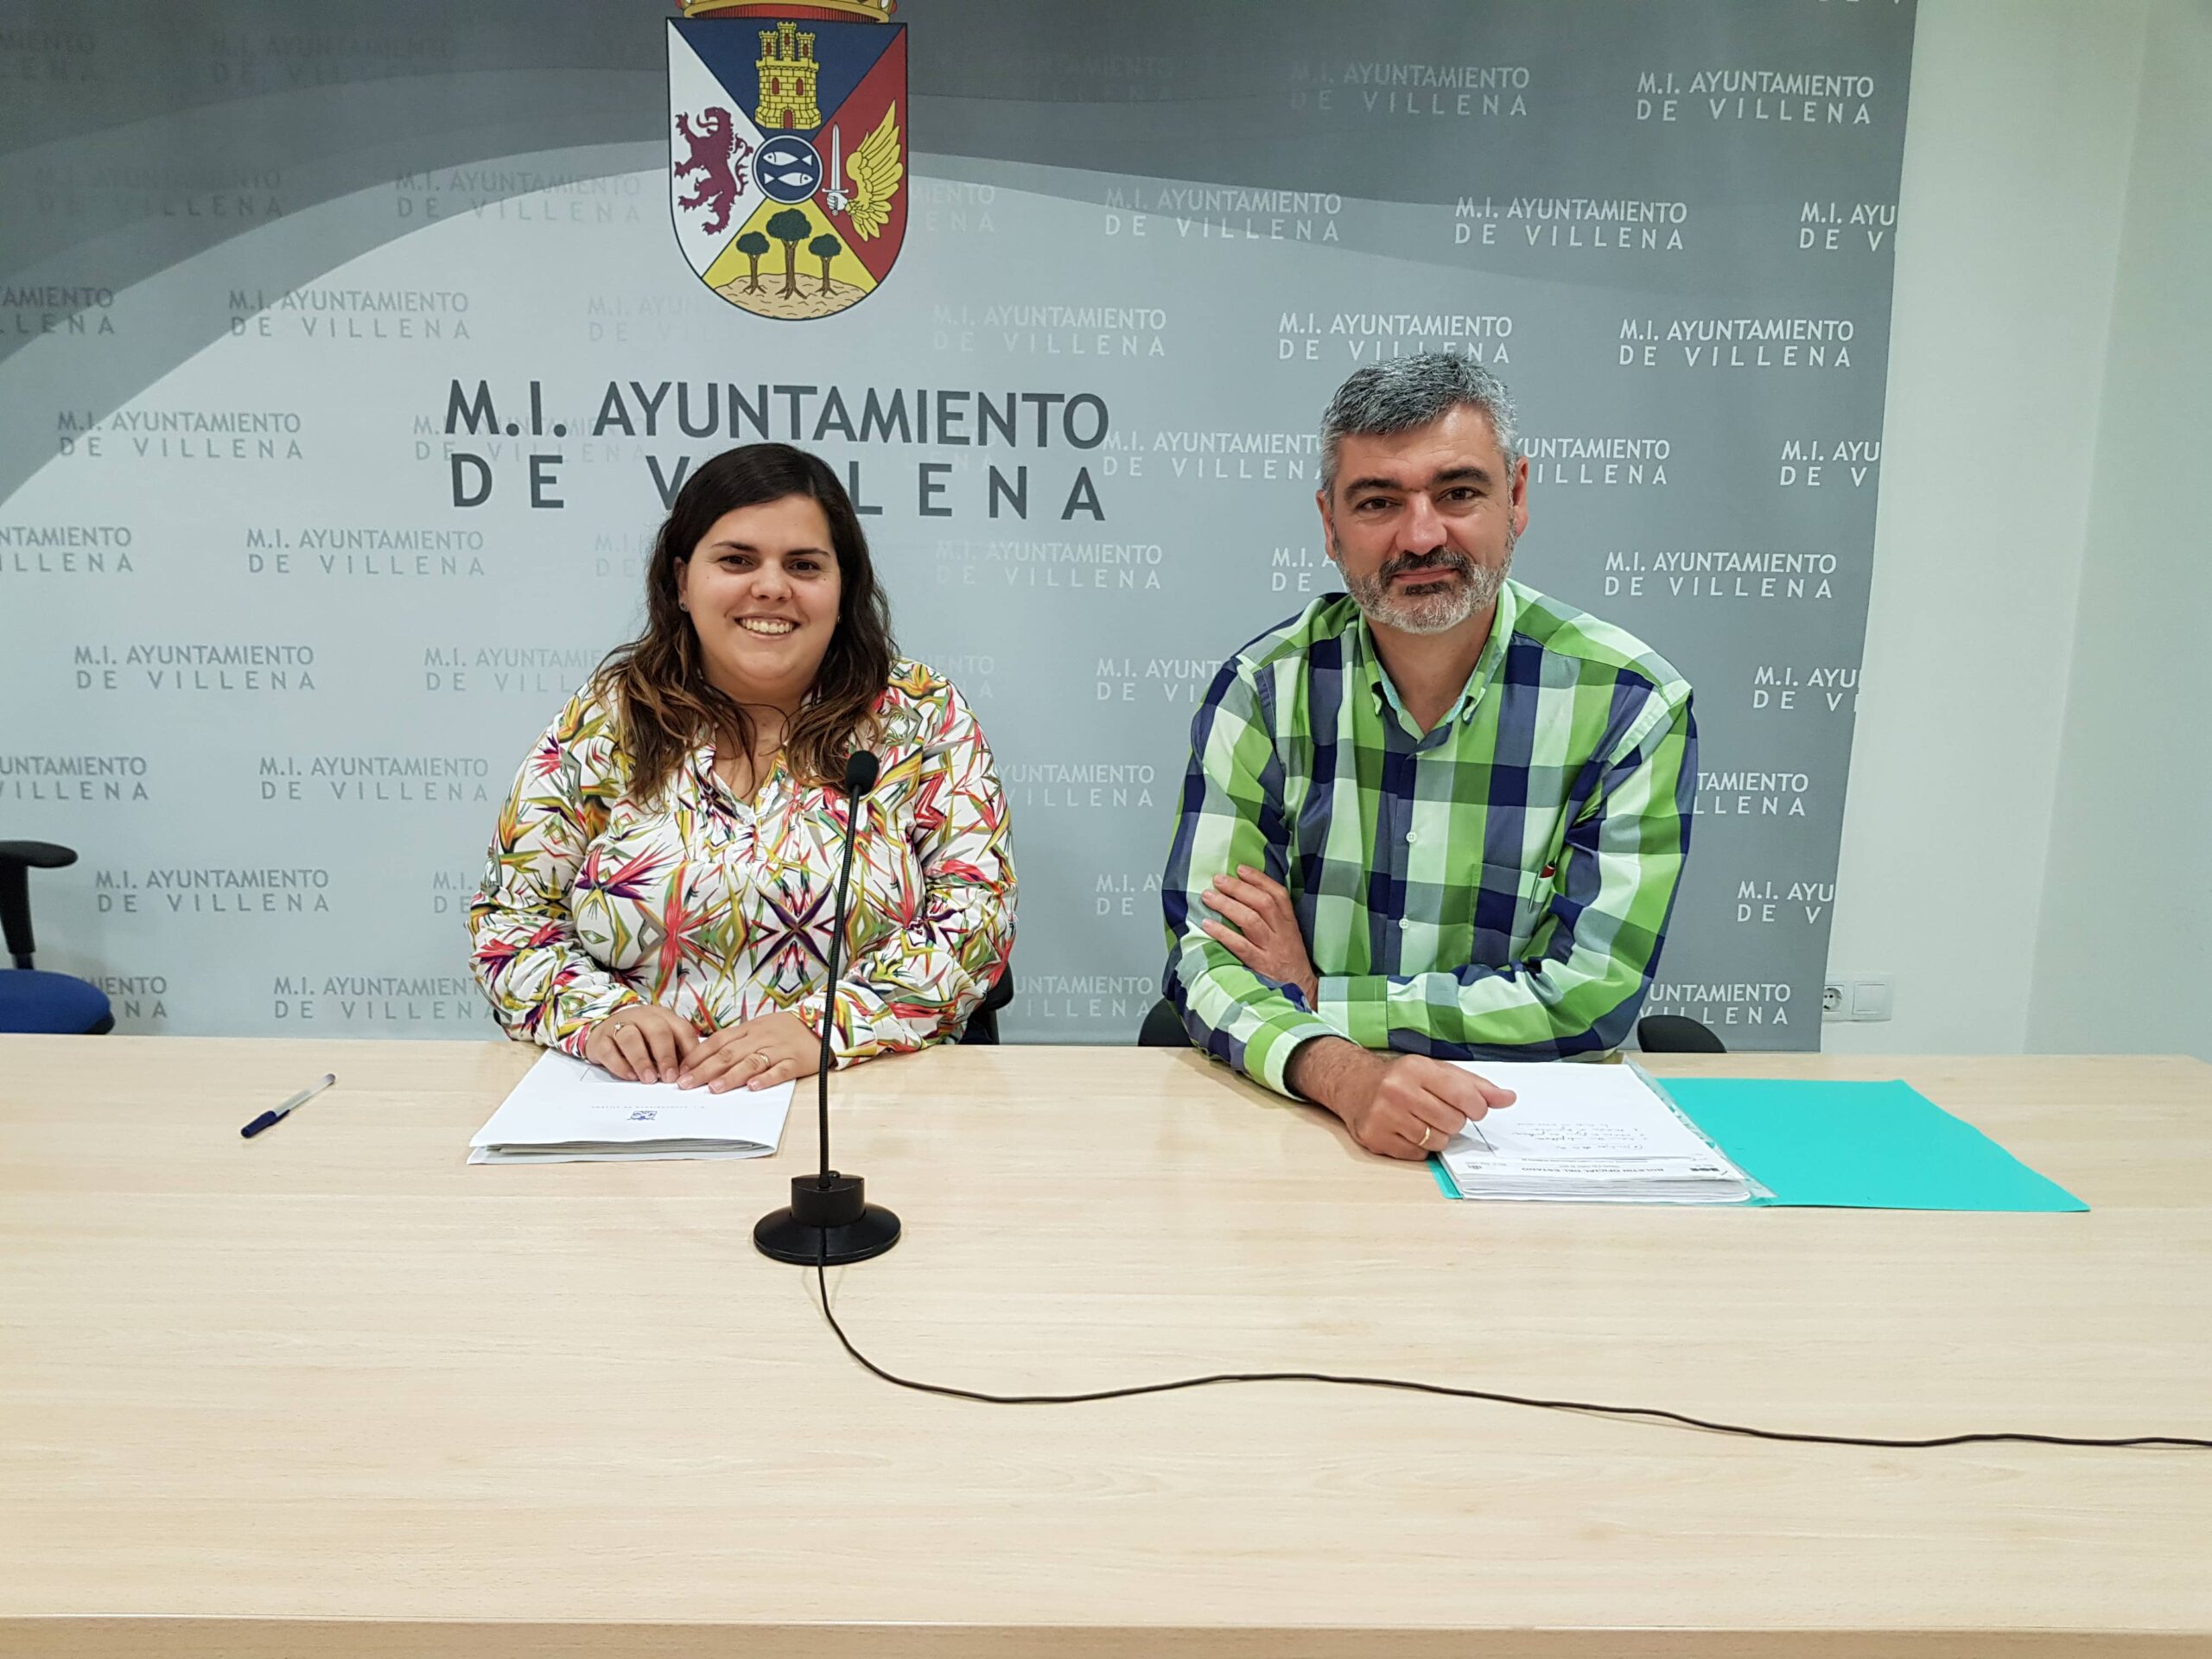 El Ayuntamiento de Villena organiza un curso gratuito de formación para los actos de arcabucería